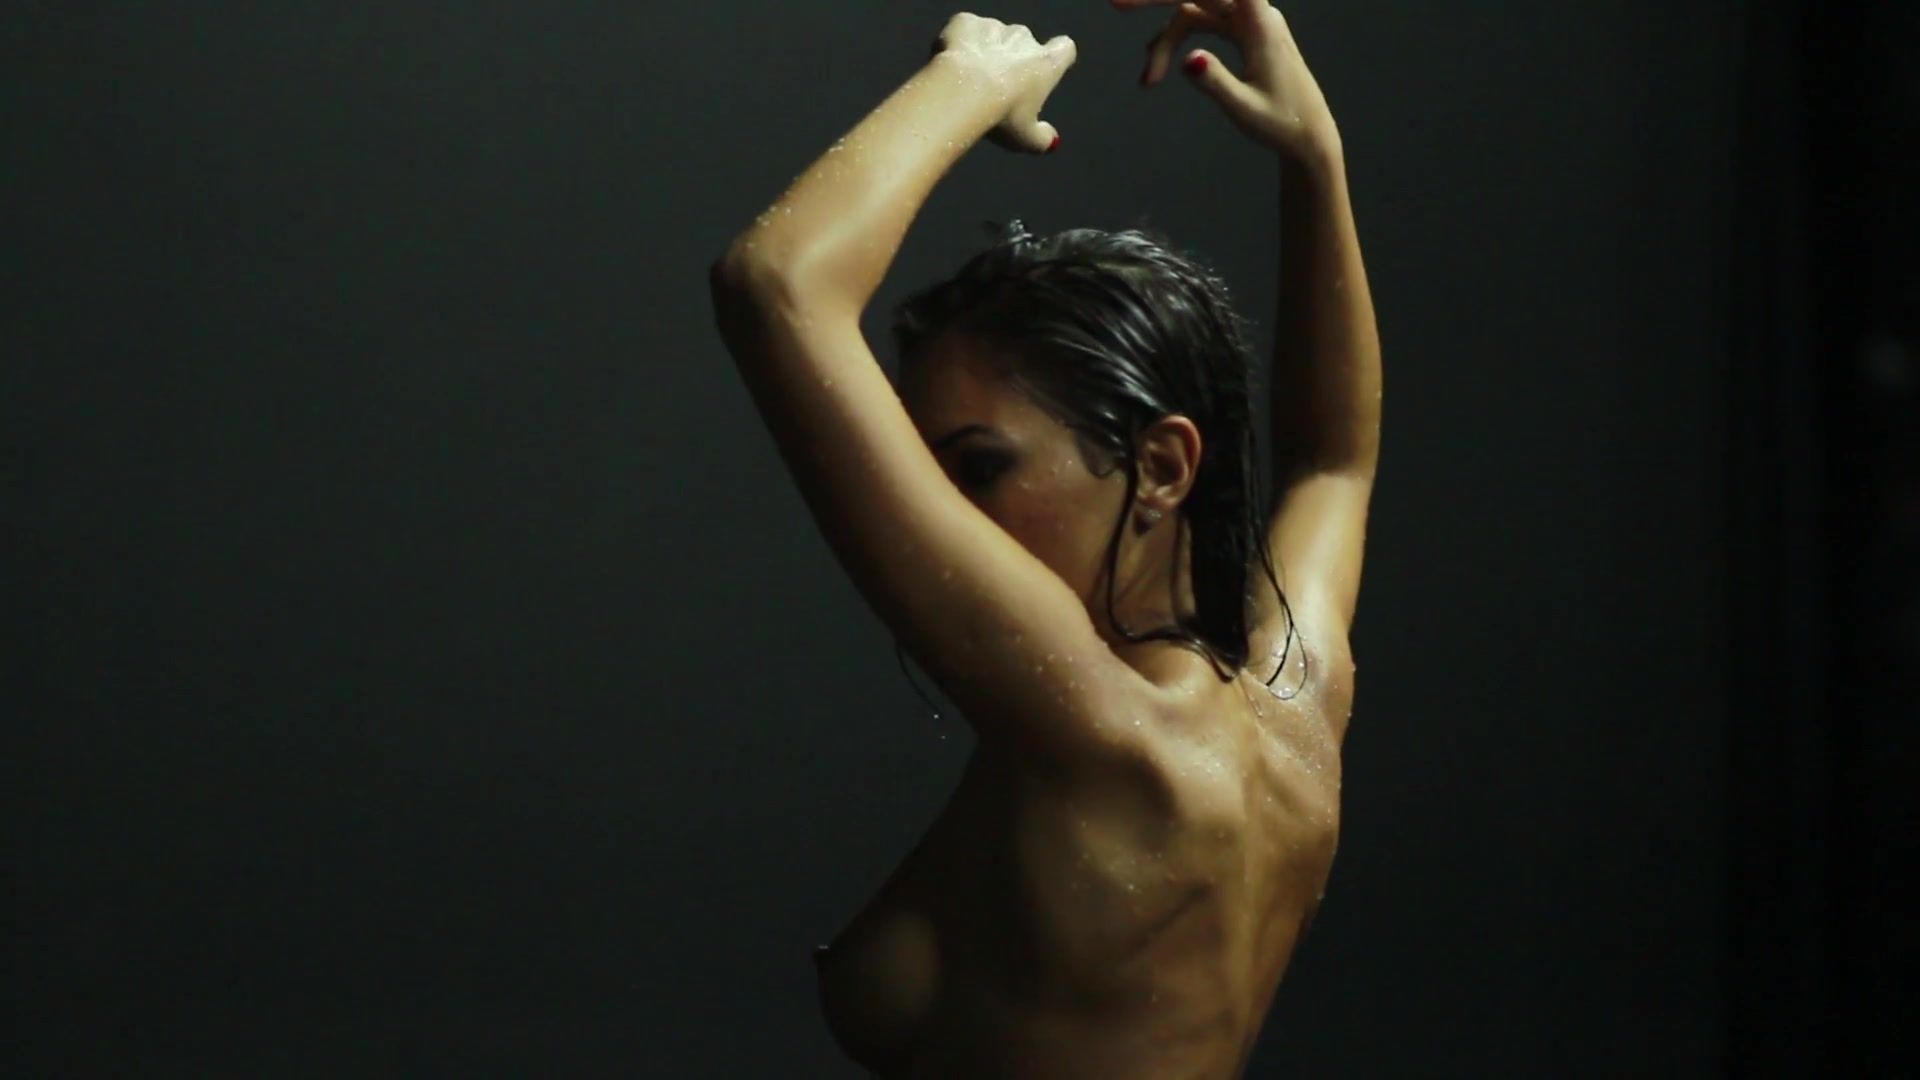 ImageZog Nude Art Video - Sexual Aqua Black - 1